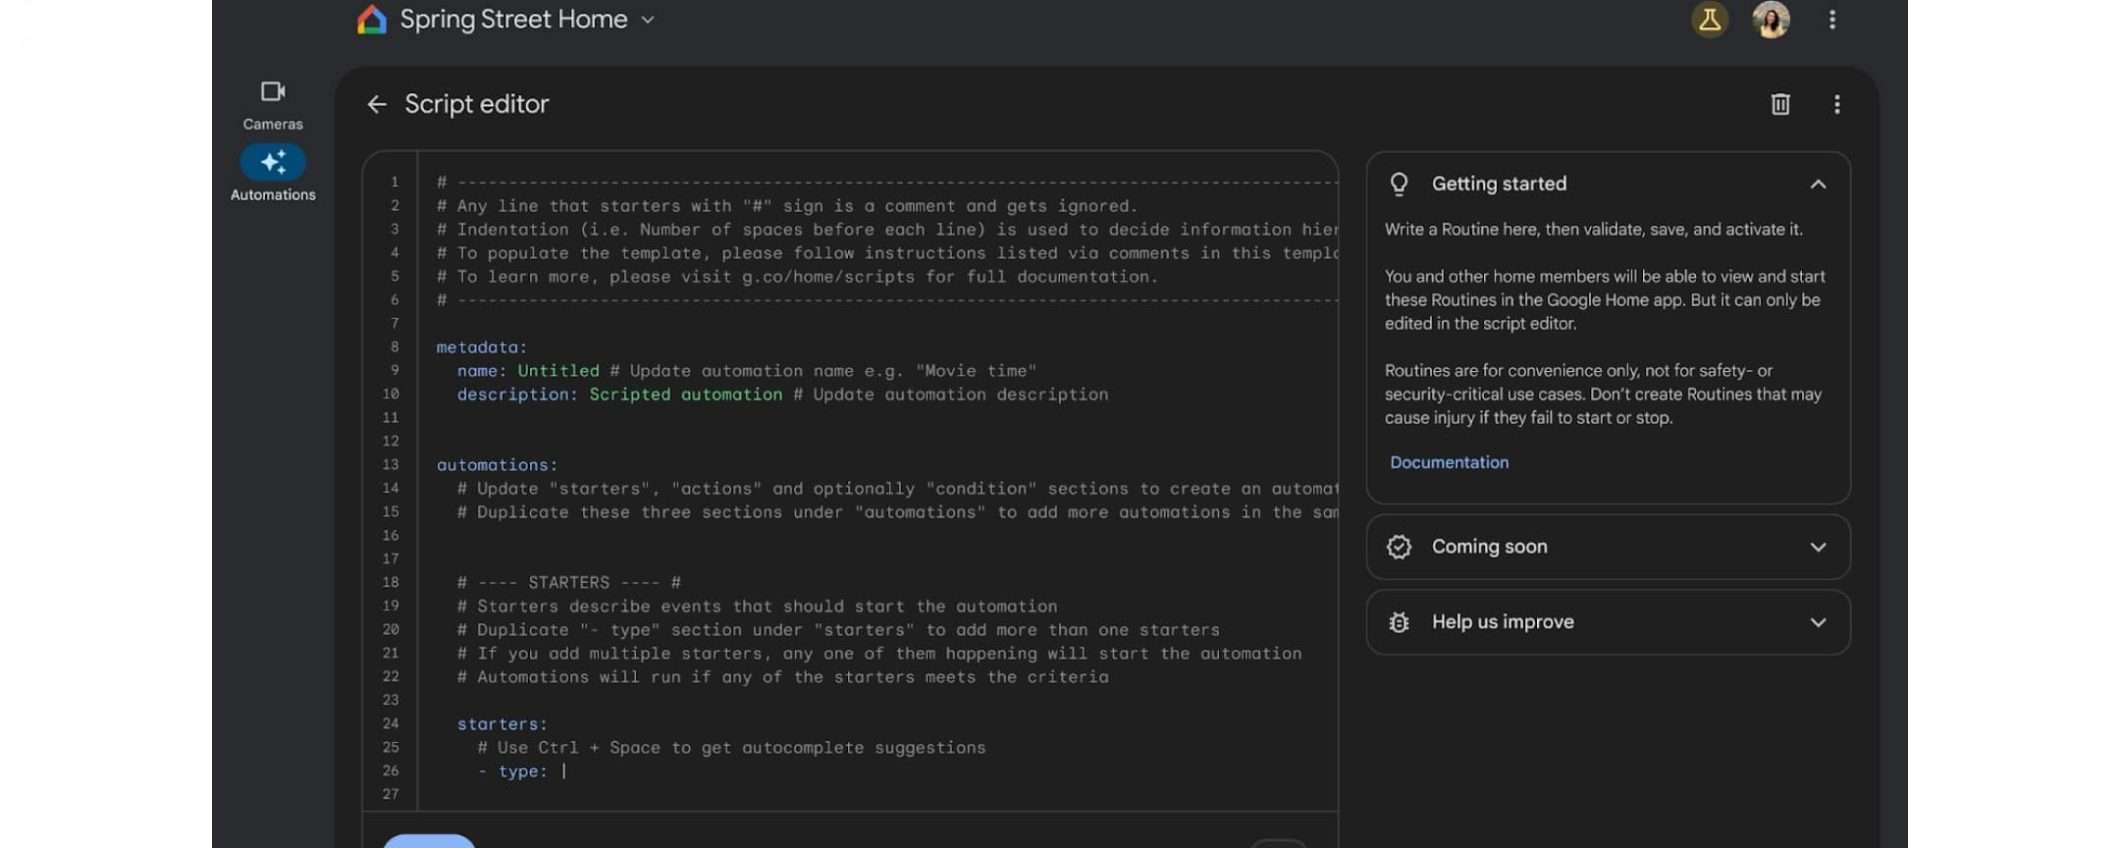 Google Home: nuovo editor script migliora automazioni